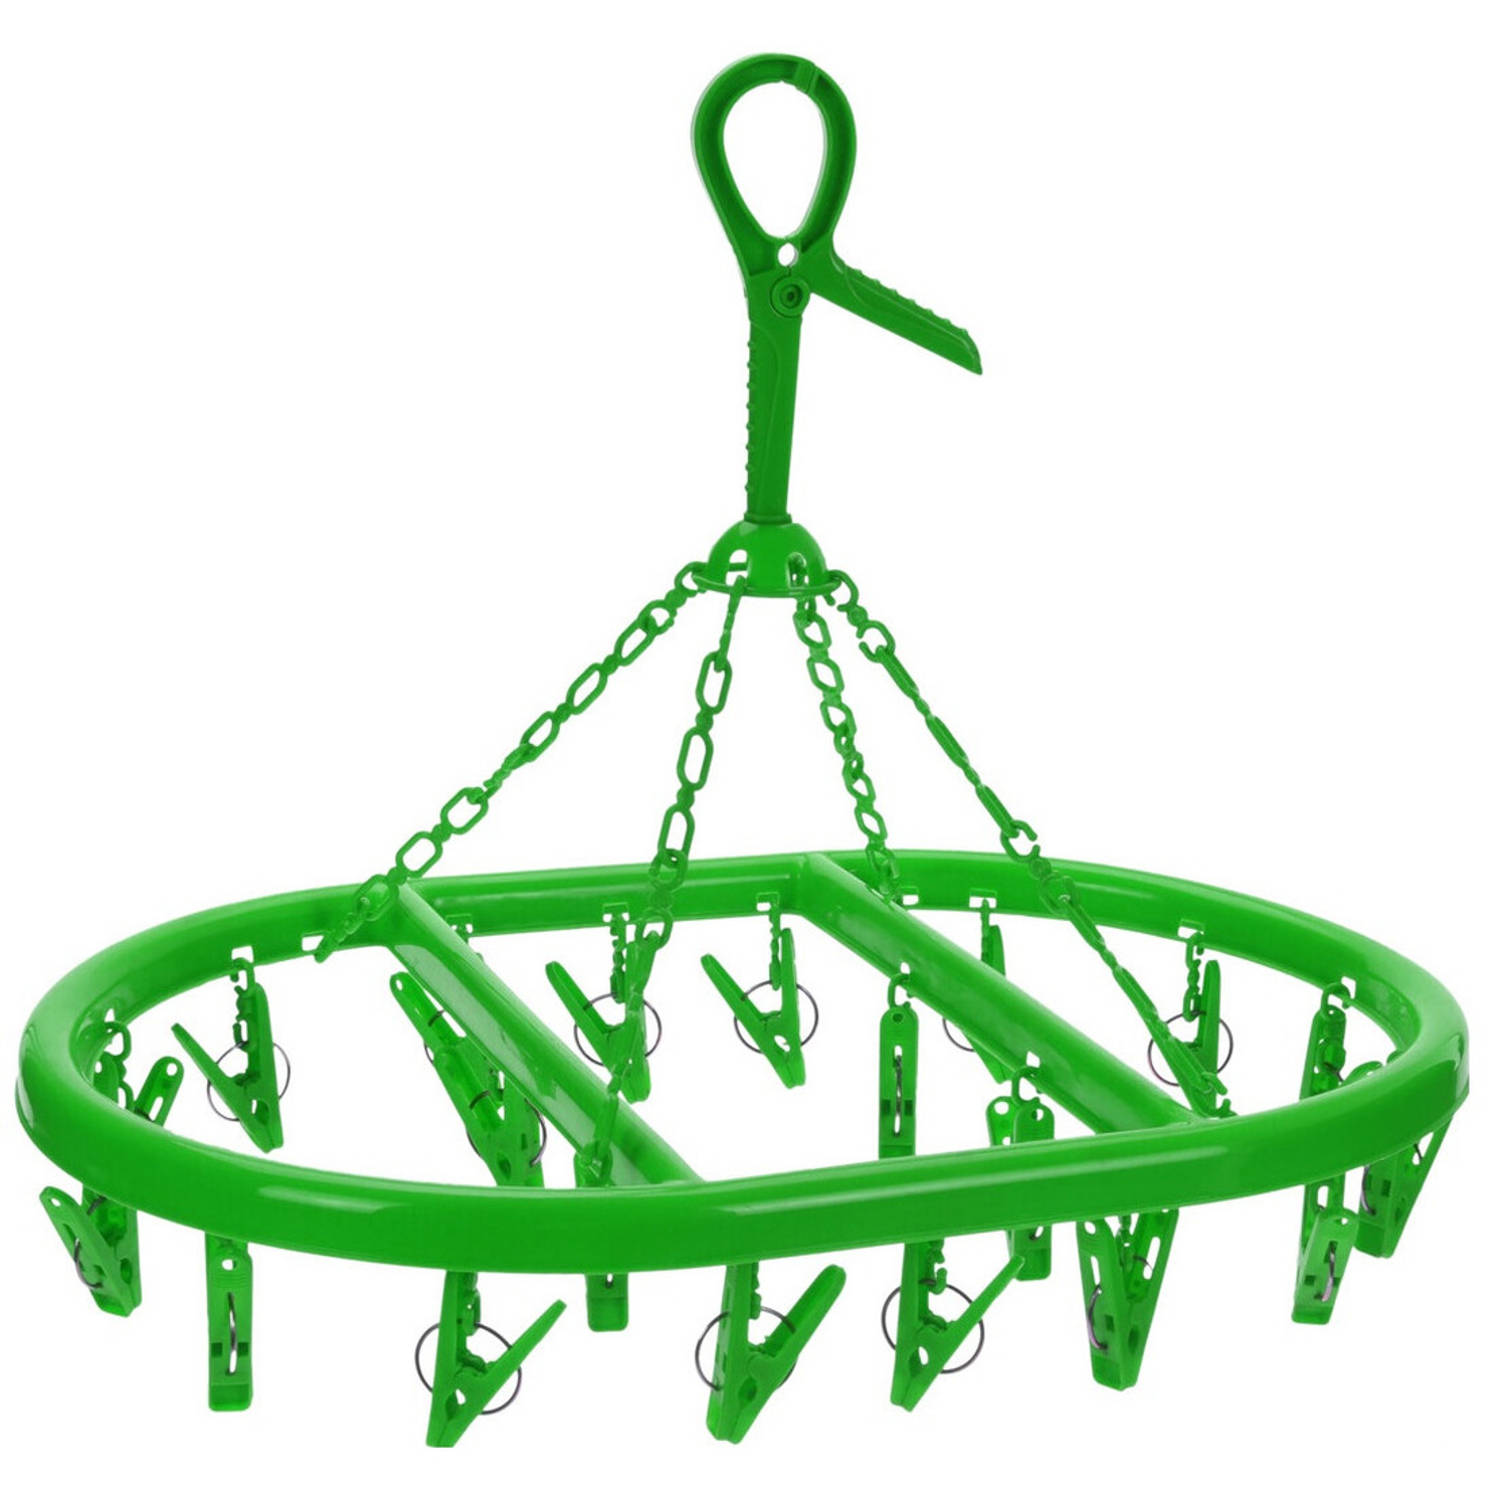 Droogcarrousel/droogmolen groen met 20 knijpers 33 x 50 cm - Hangdroogrek